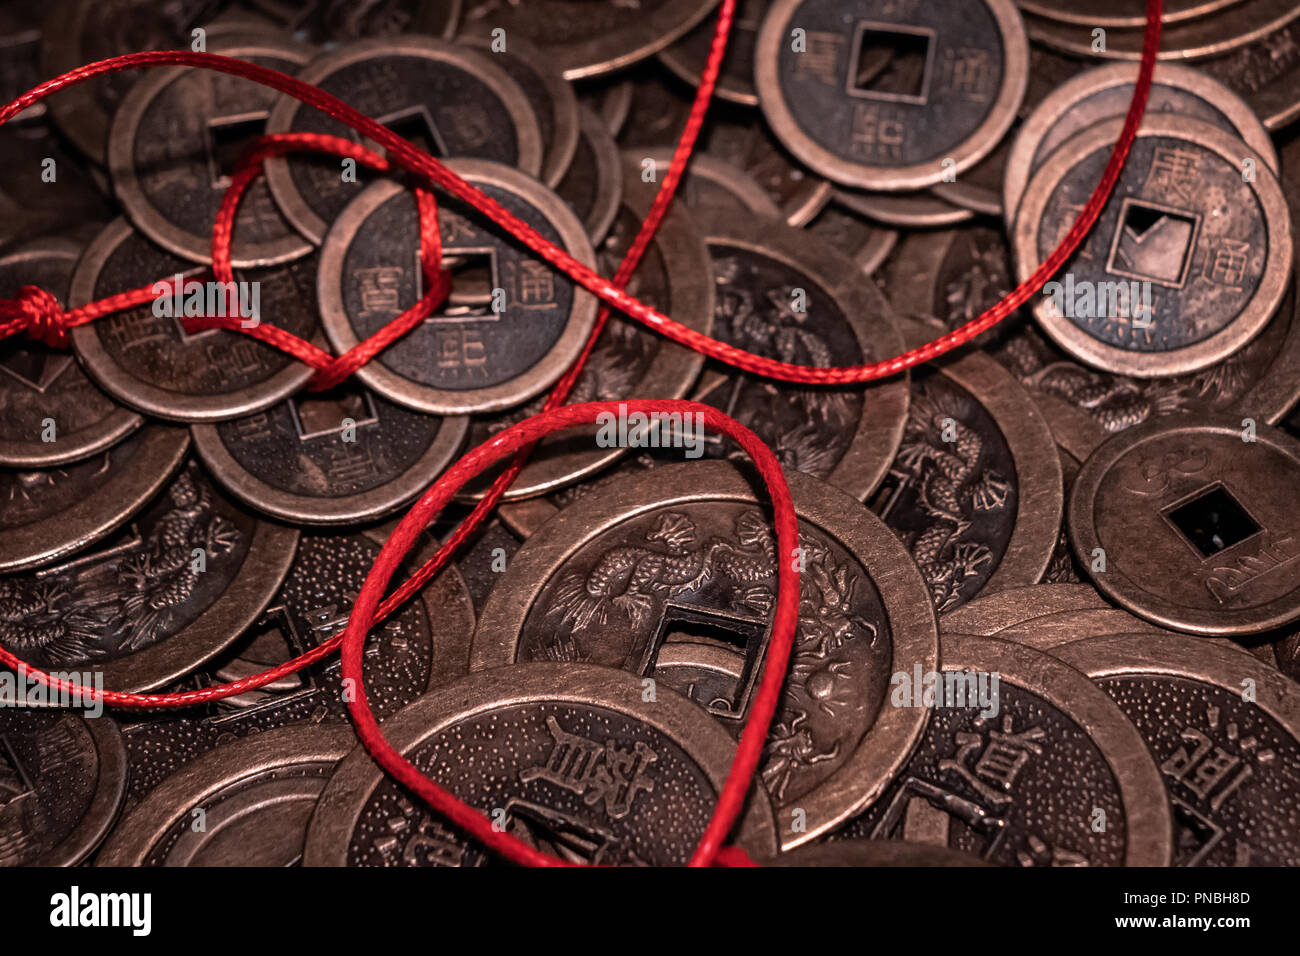 Fausse monnaie : 27 042 images, photos de stock, objets 3D et images  vectorielles